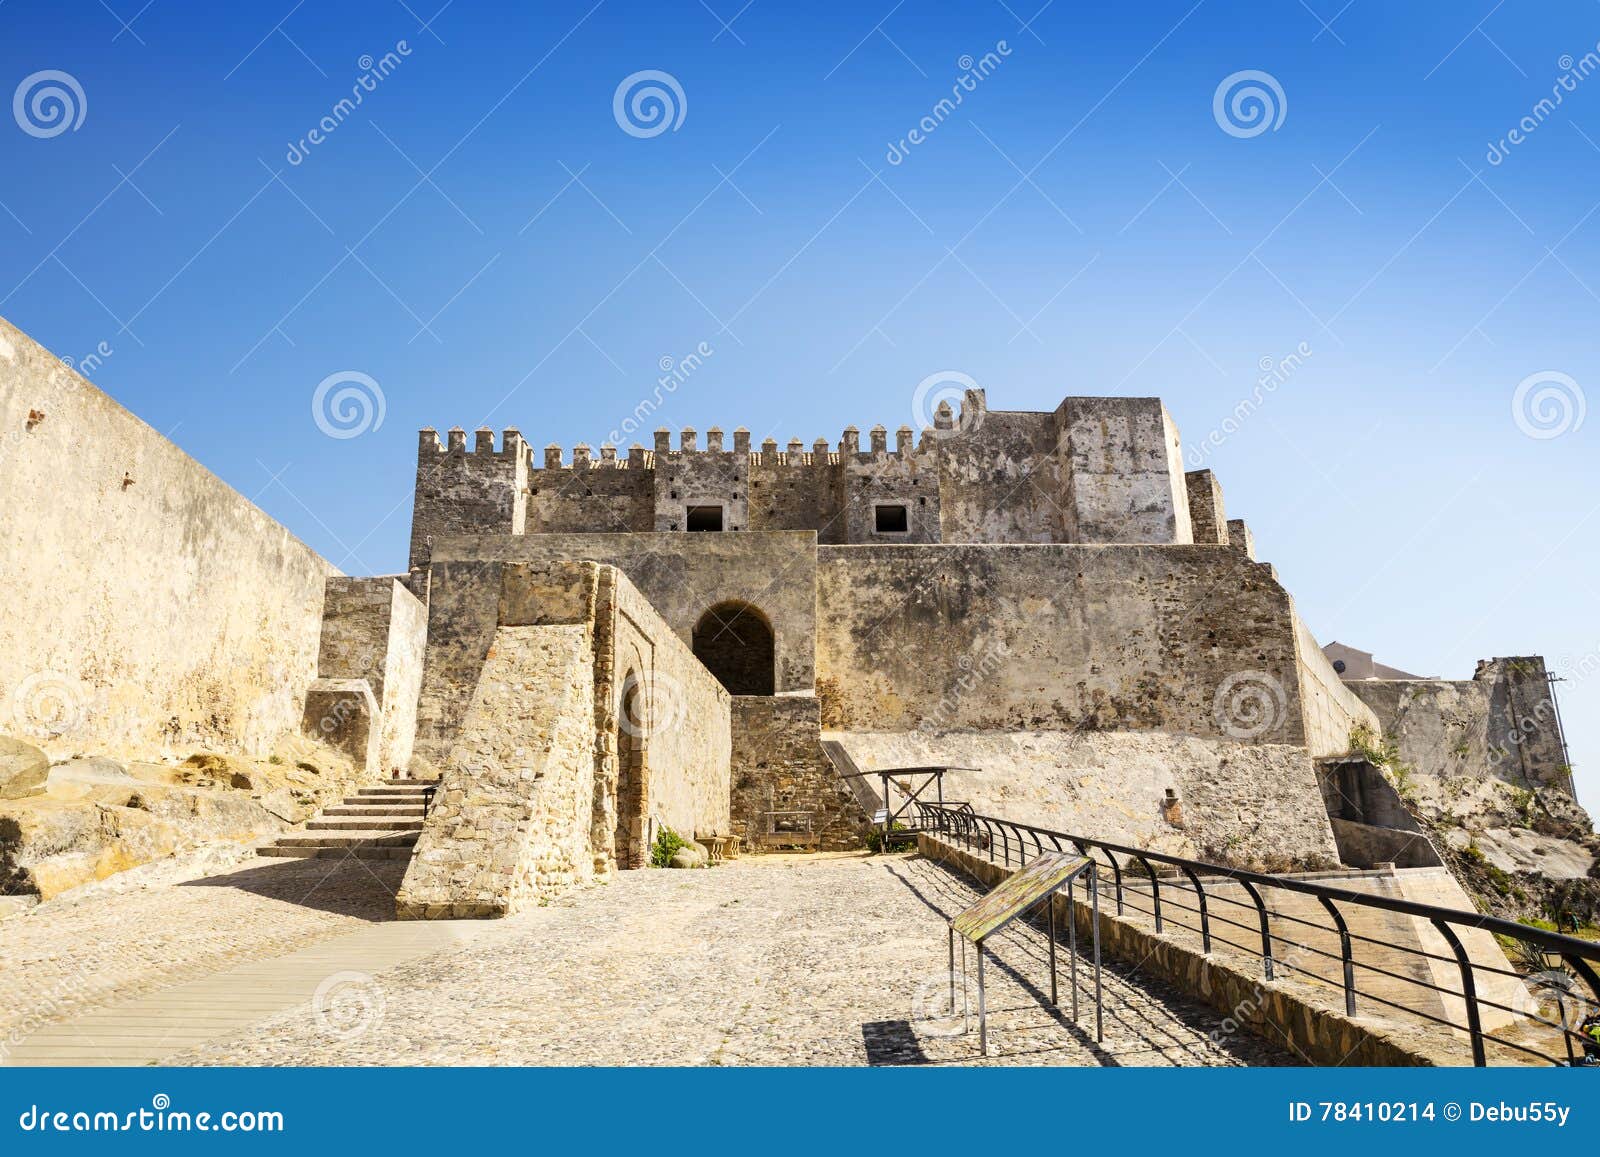 medieval castle in tarifa, spain.